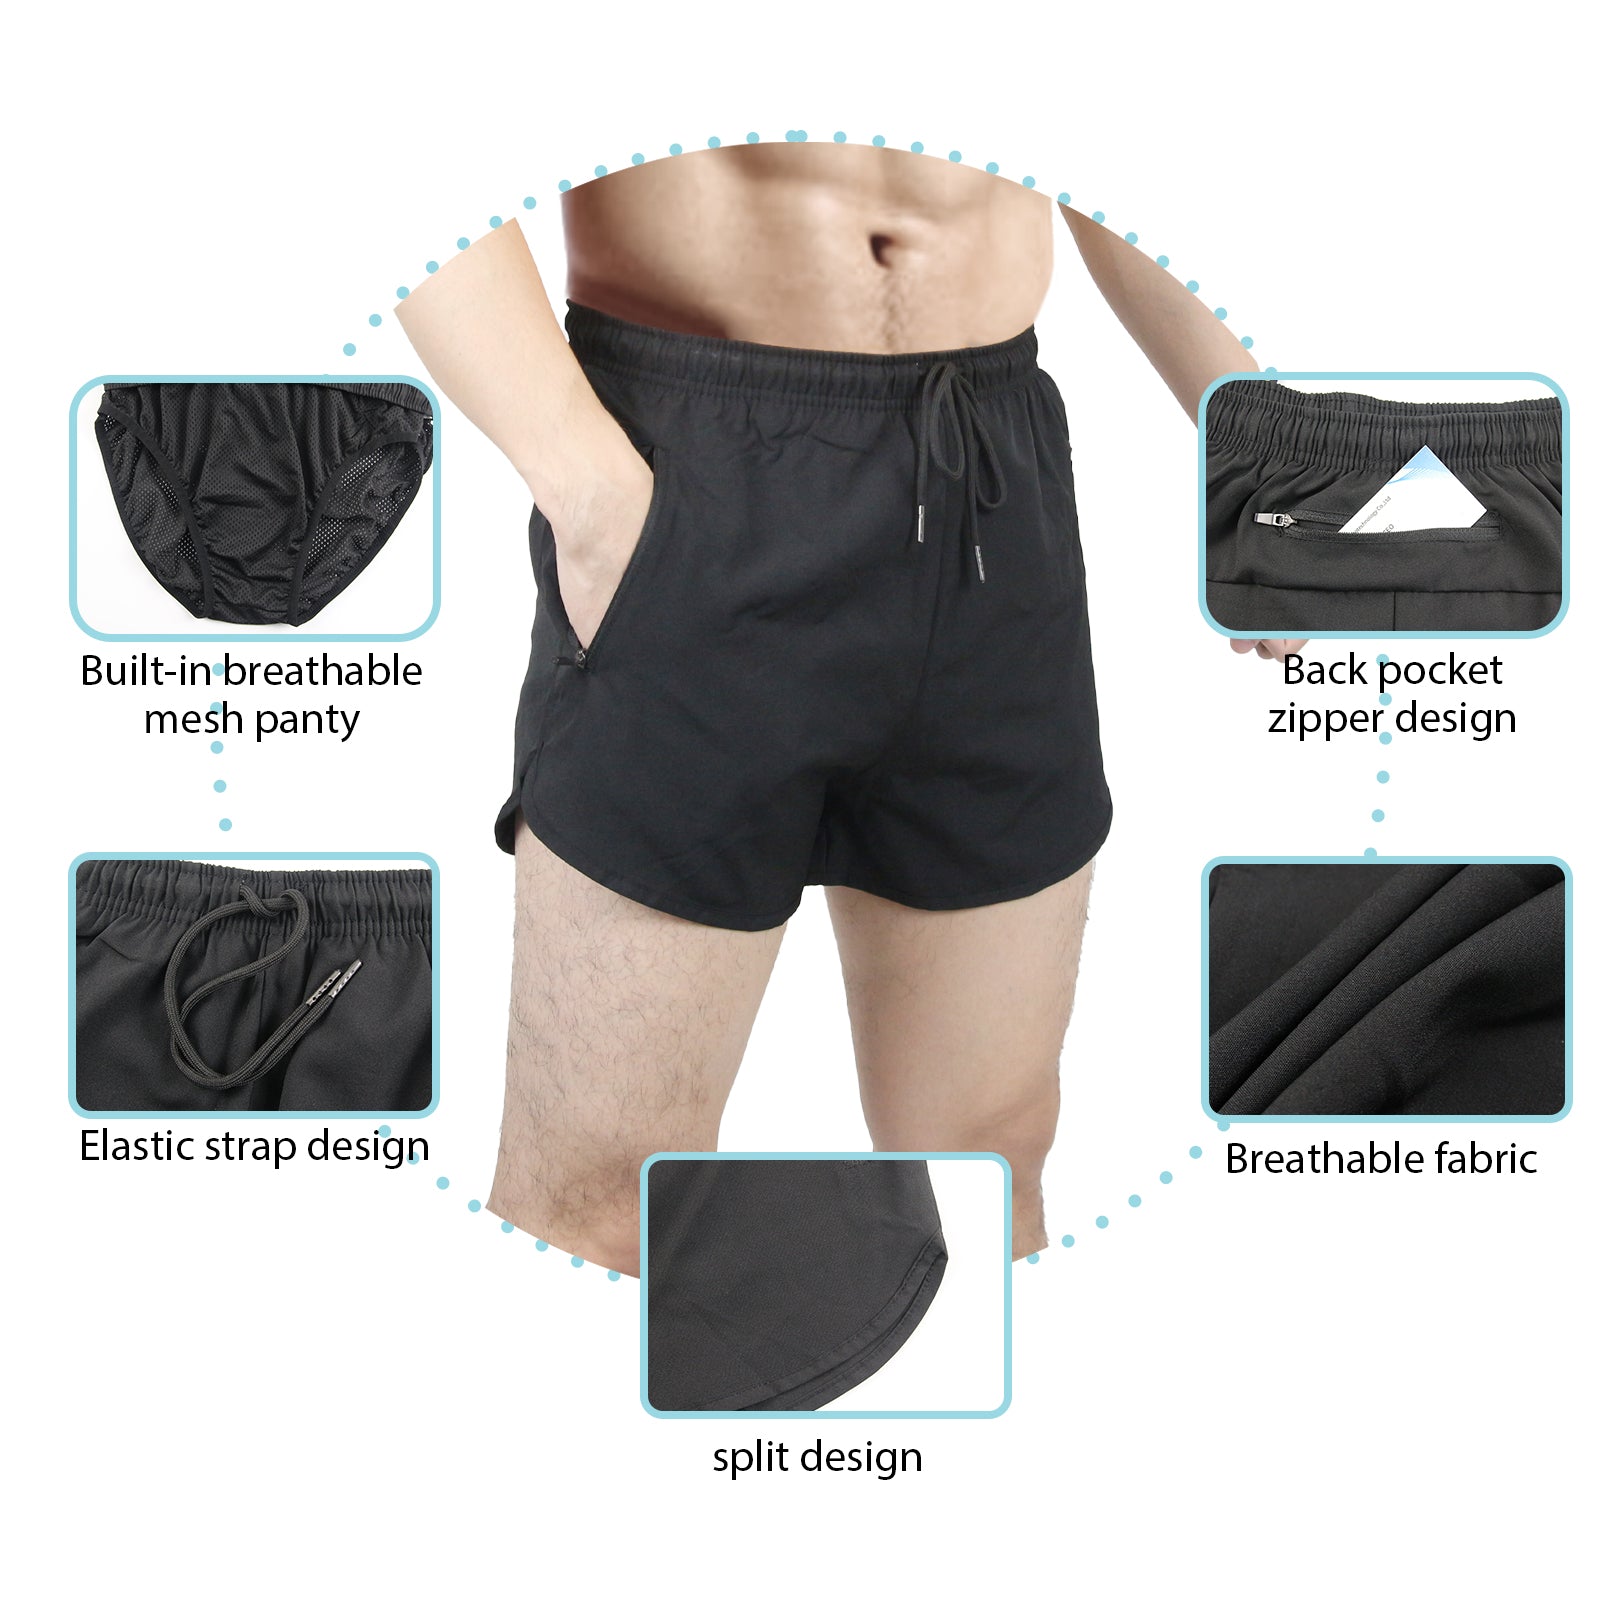 Men's Quick Dry Athletic Shorts description